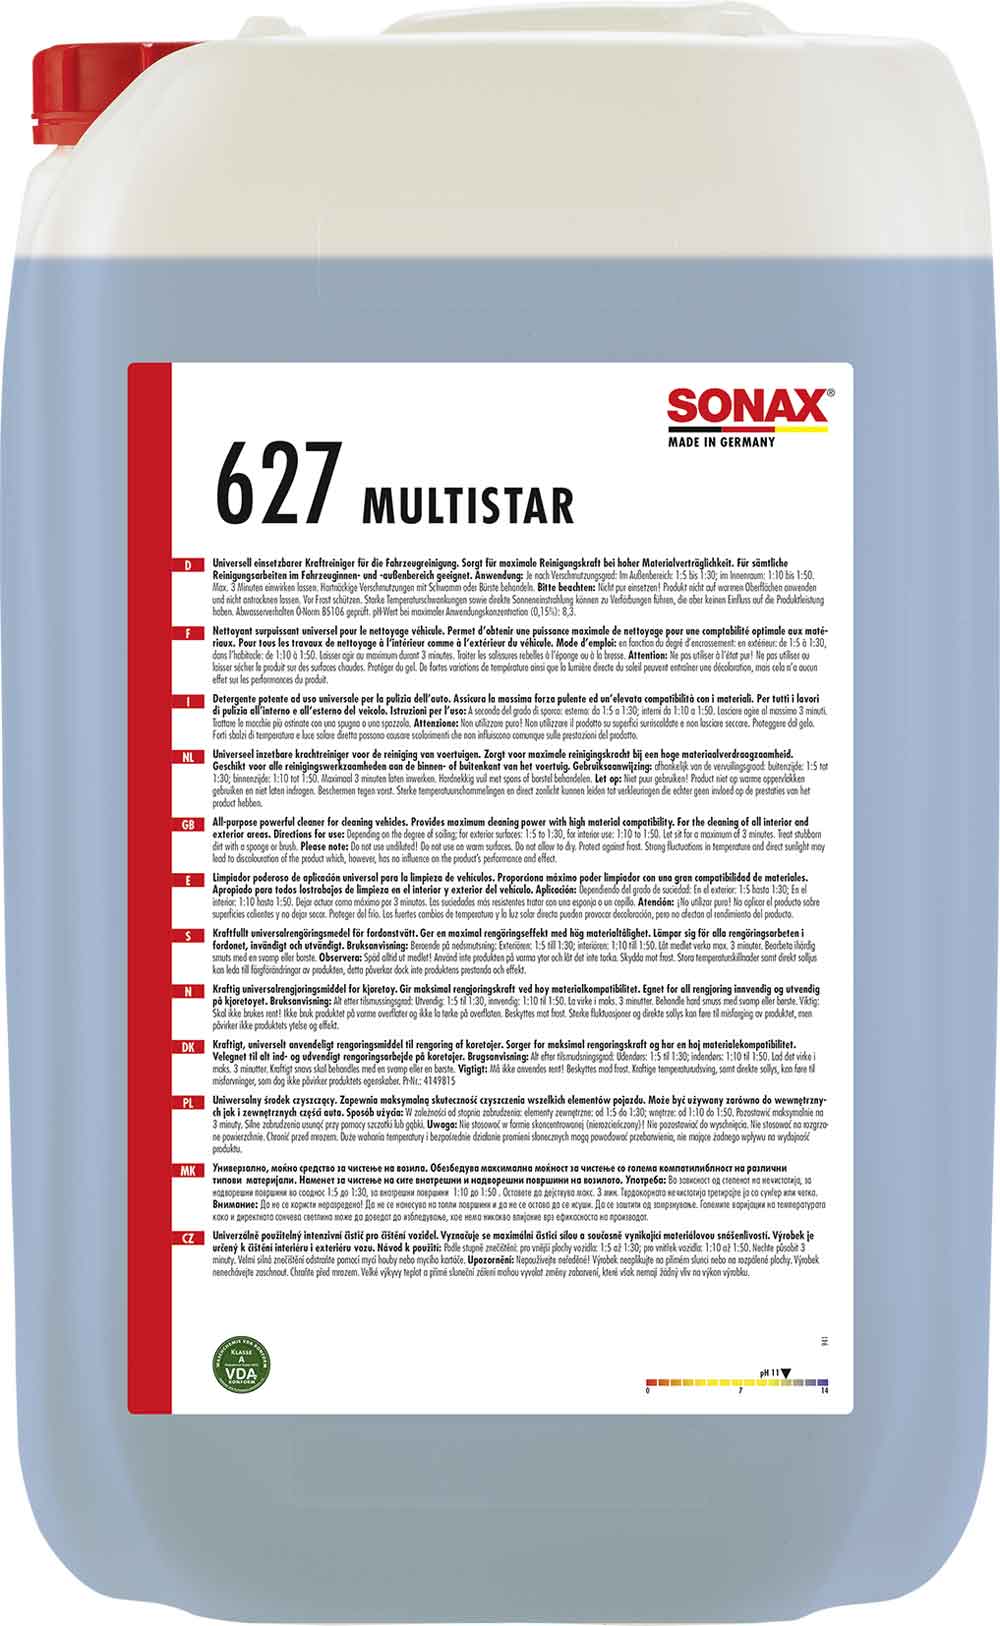 SONAX MultiStar Uinversal Kraftreiniger Vorreiniger 25L